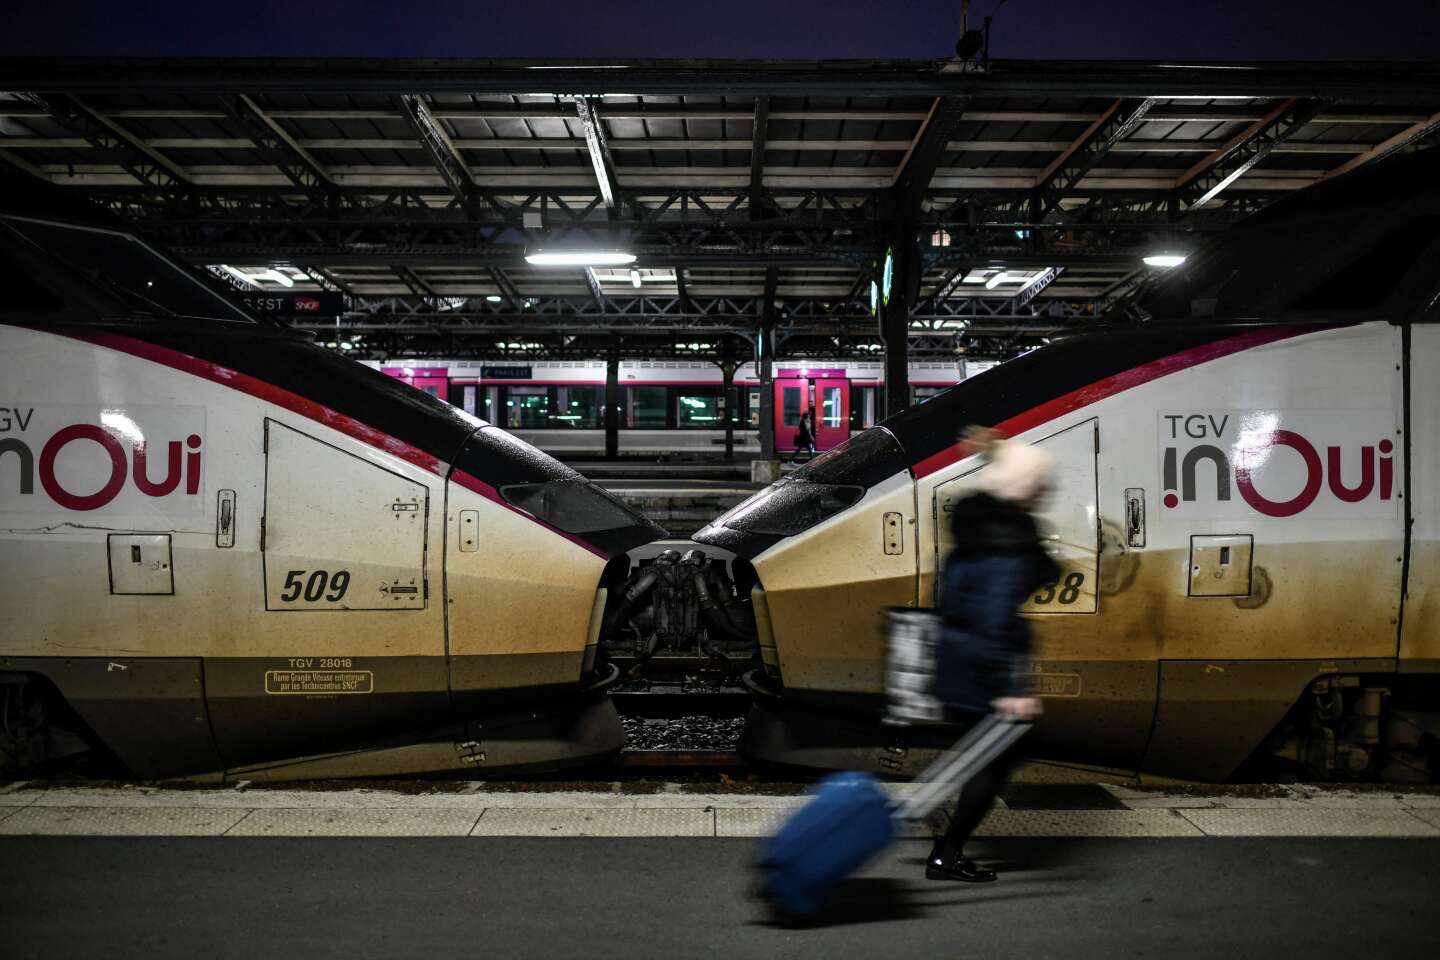 Twee op de vijf TGV’s die zijn geannuleerd voor de kerstvakantie, krijgen passagiers een voucher ter waarde van het dubbele van hun ticketbedrag